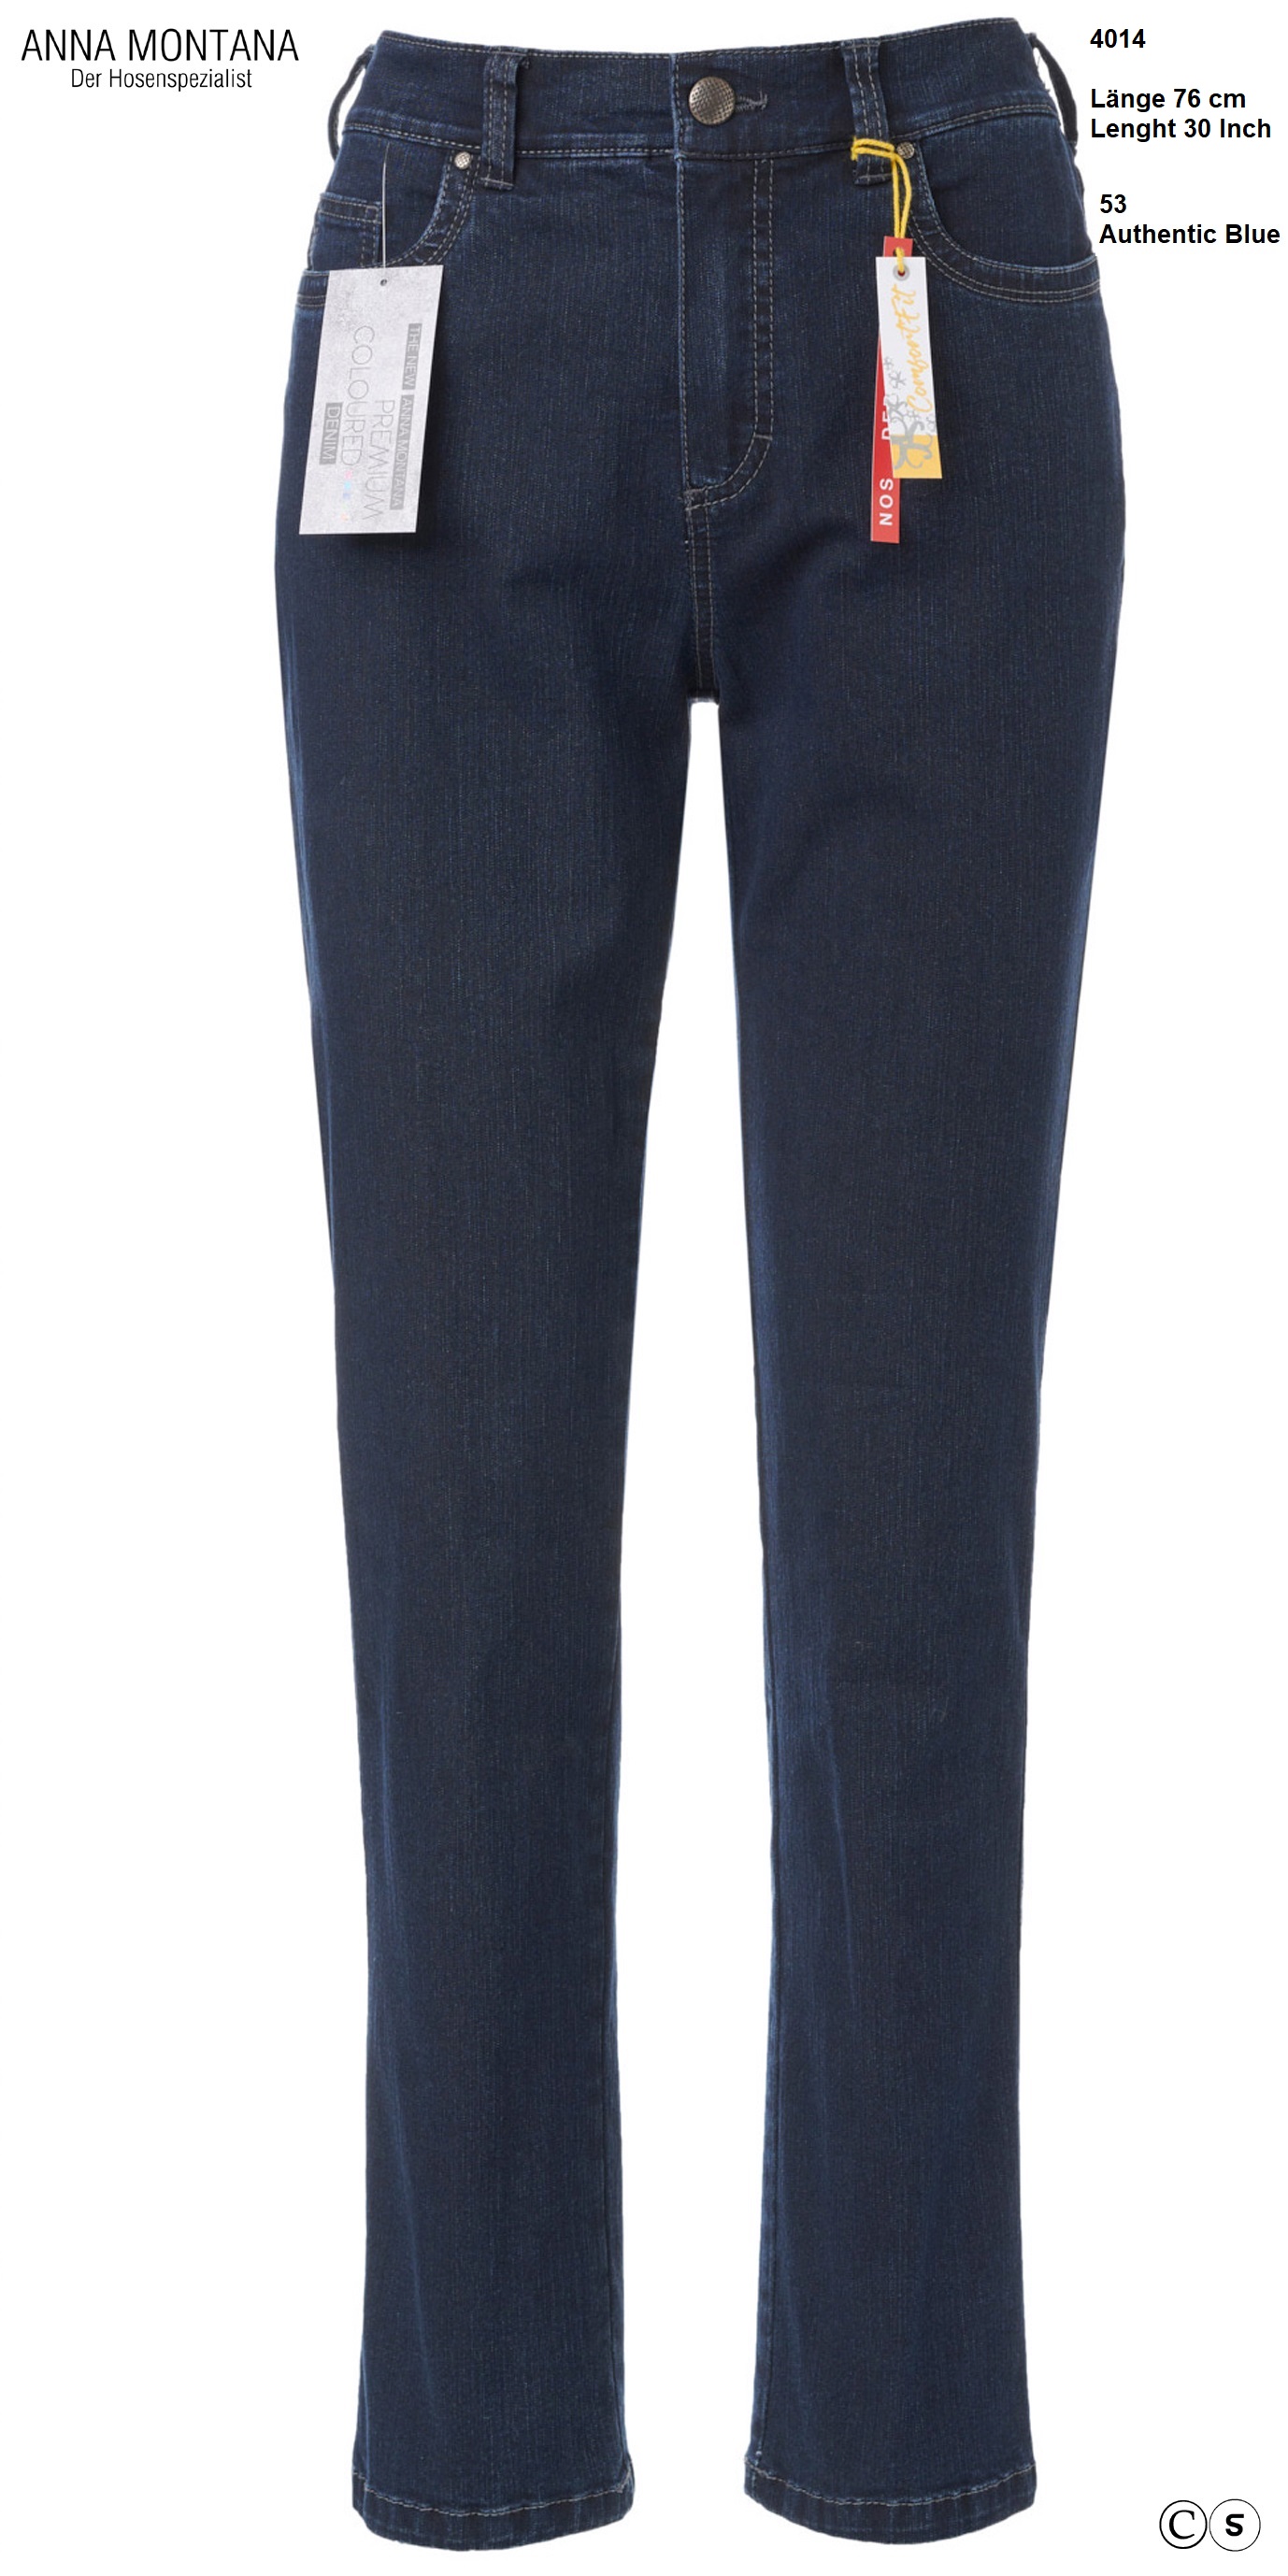 Schlemper Moden - Dora 4014 Standard length /Jeans ANNA MONTANA